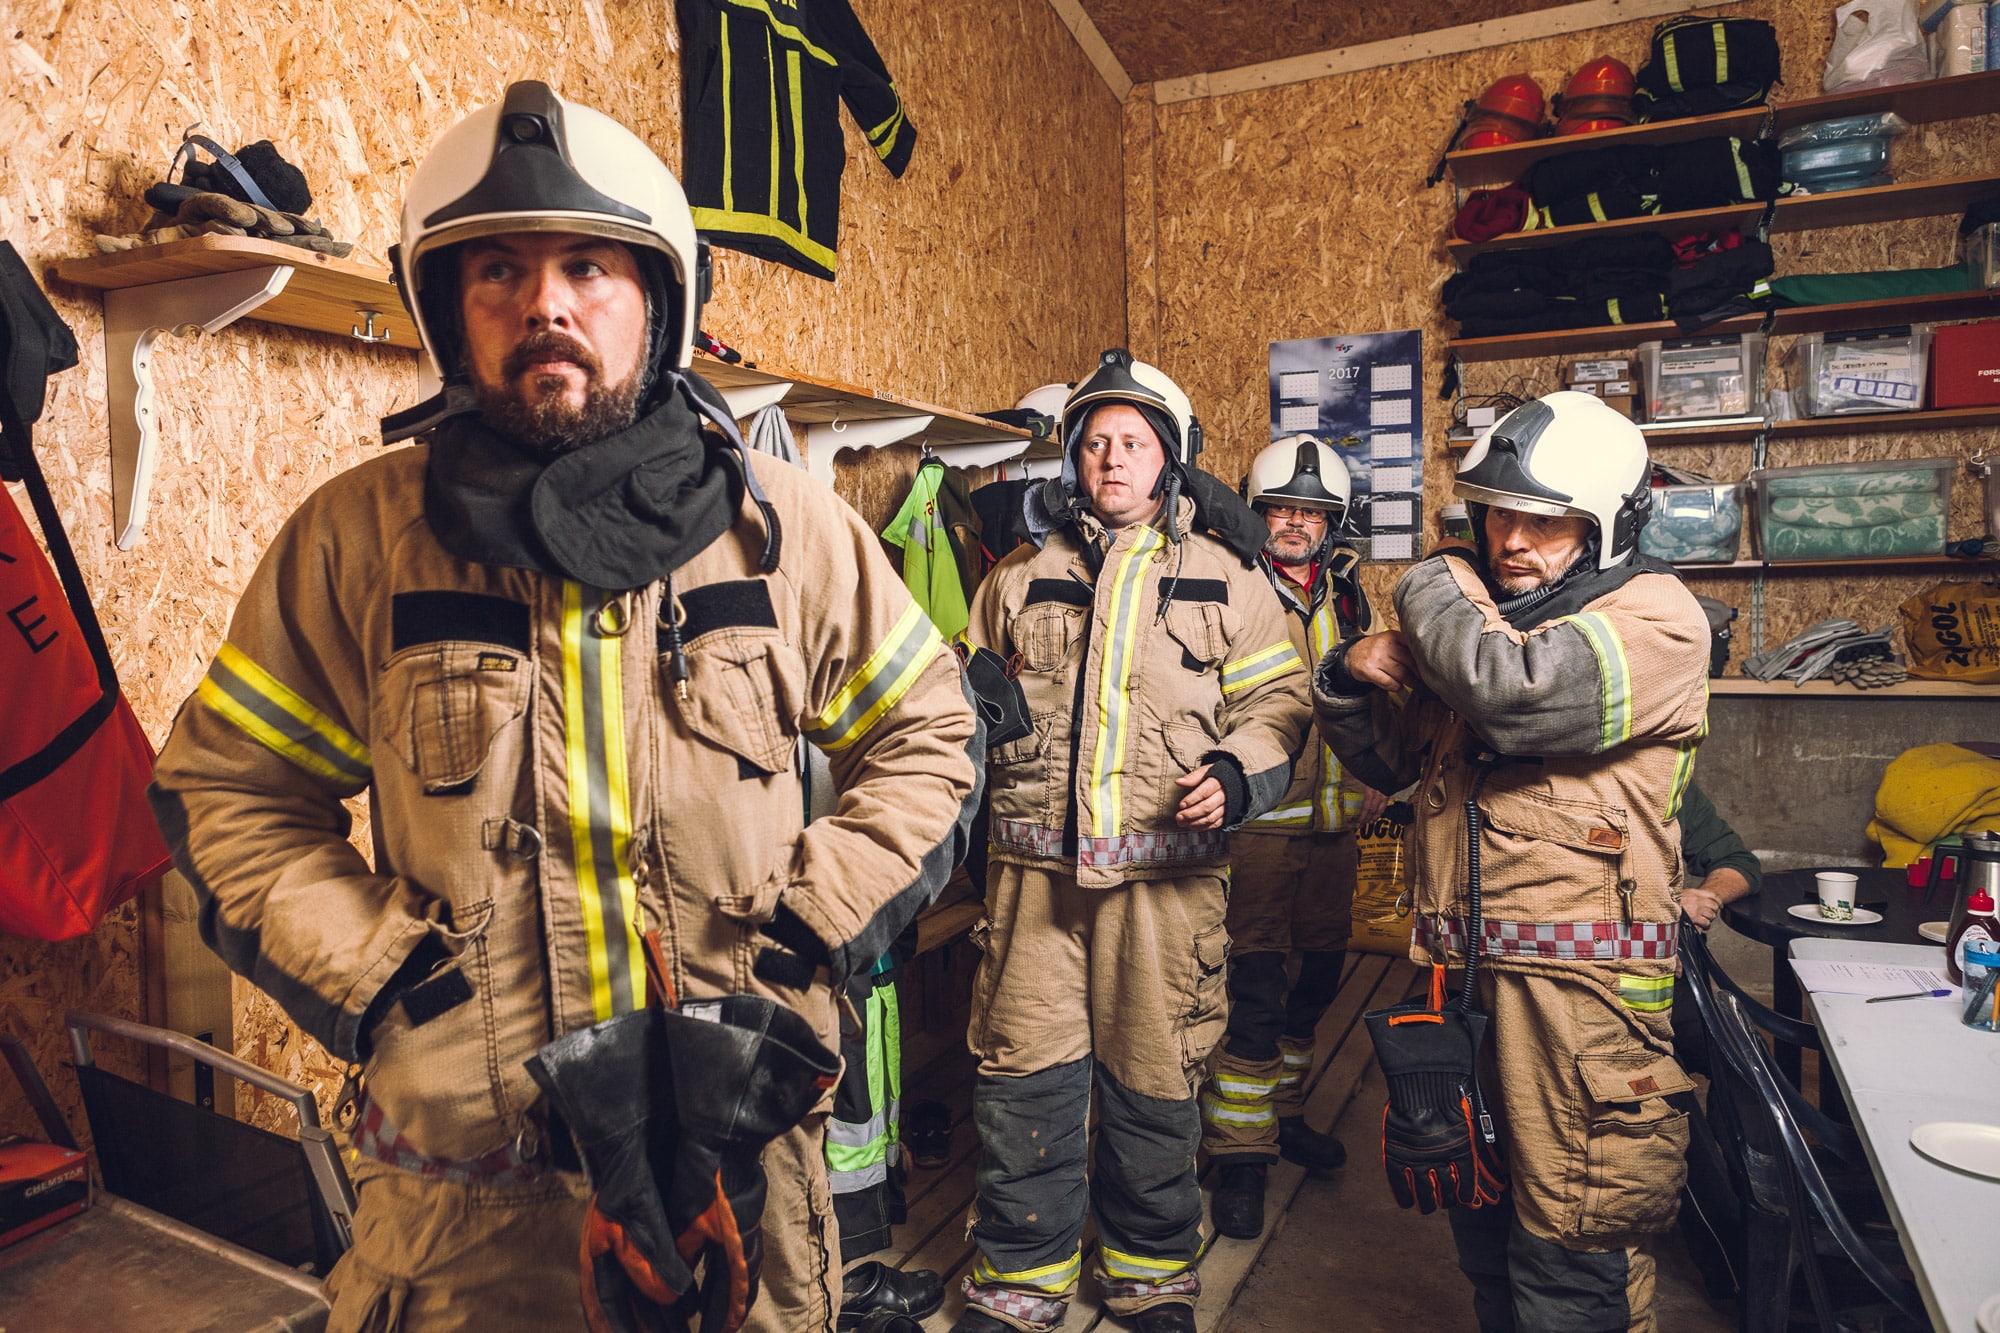 Akutthjelperne klare til å rykke ut. Brannmenn ankommer ofte skadestedet 16 minutter før andre nødetater. Derfor utdannes ofte brannmenn til å bli akutthjelpere.